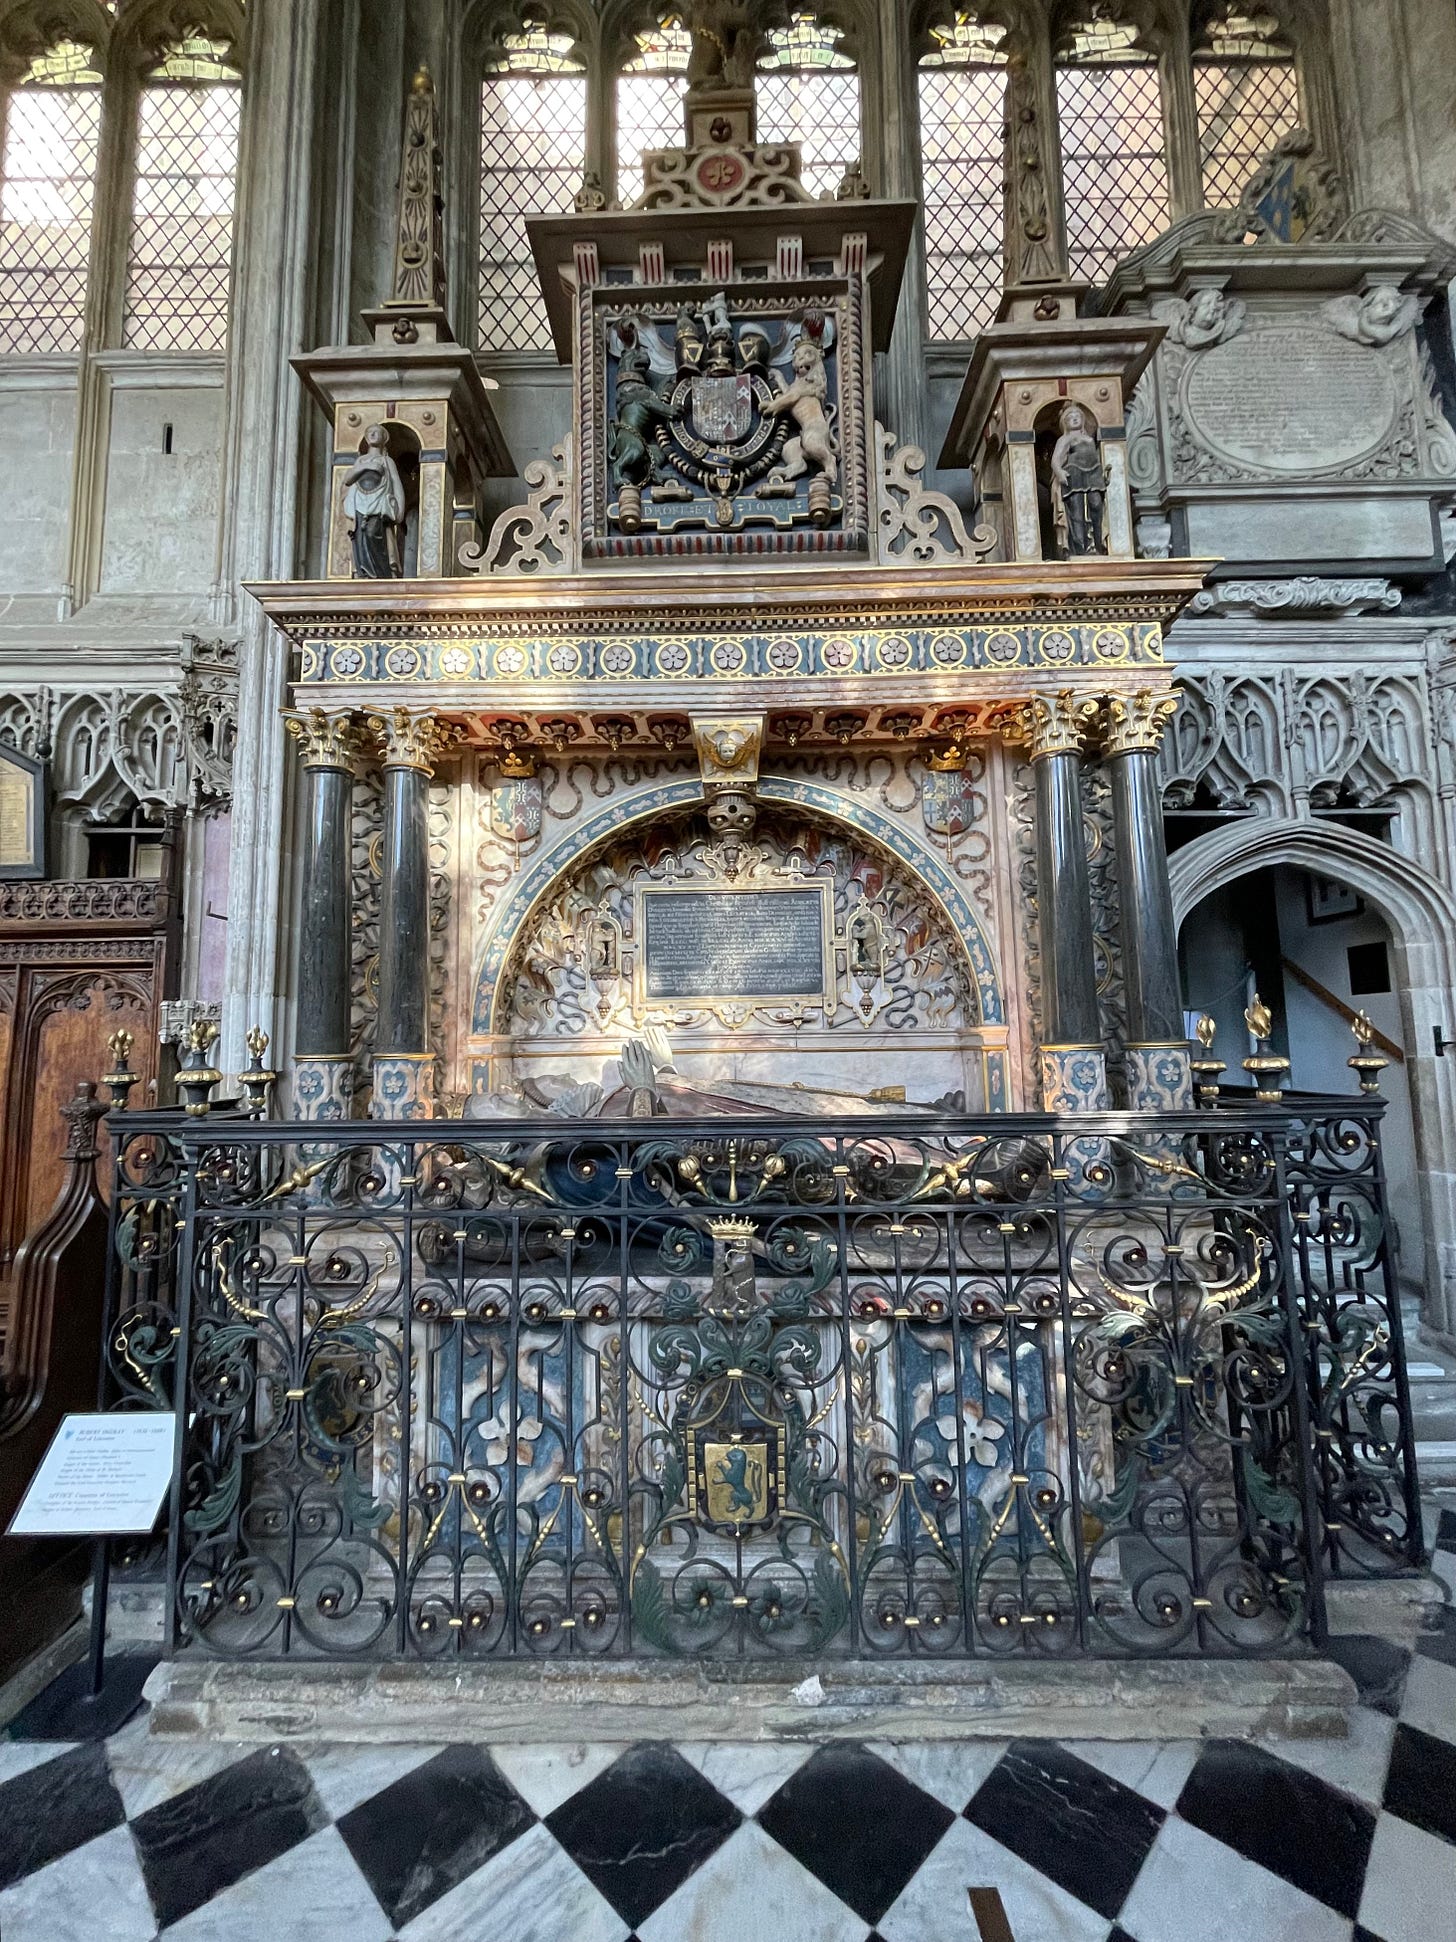 Robert Dudley's Tomb